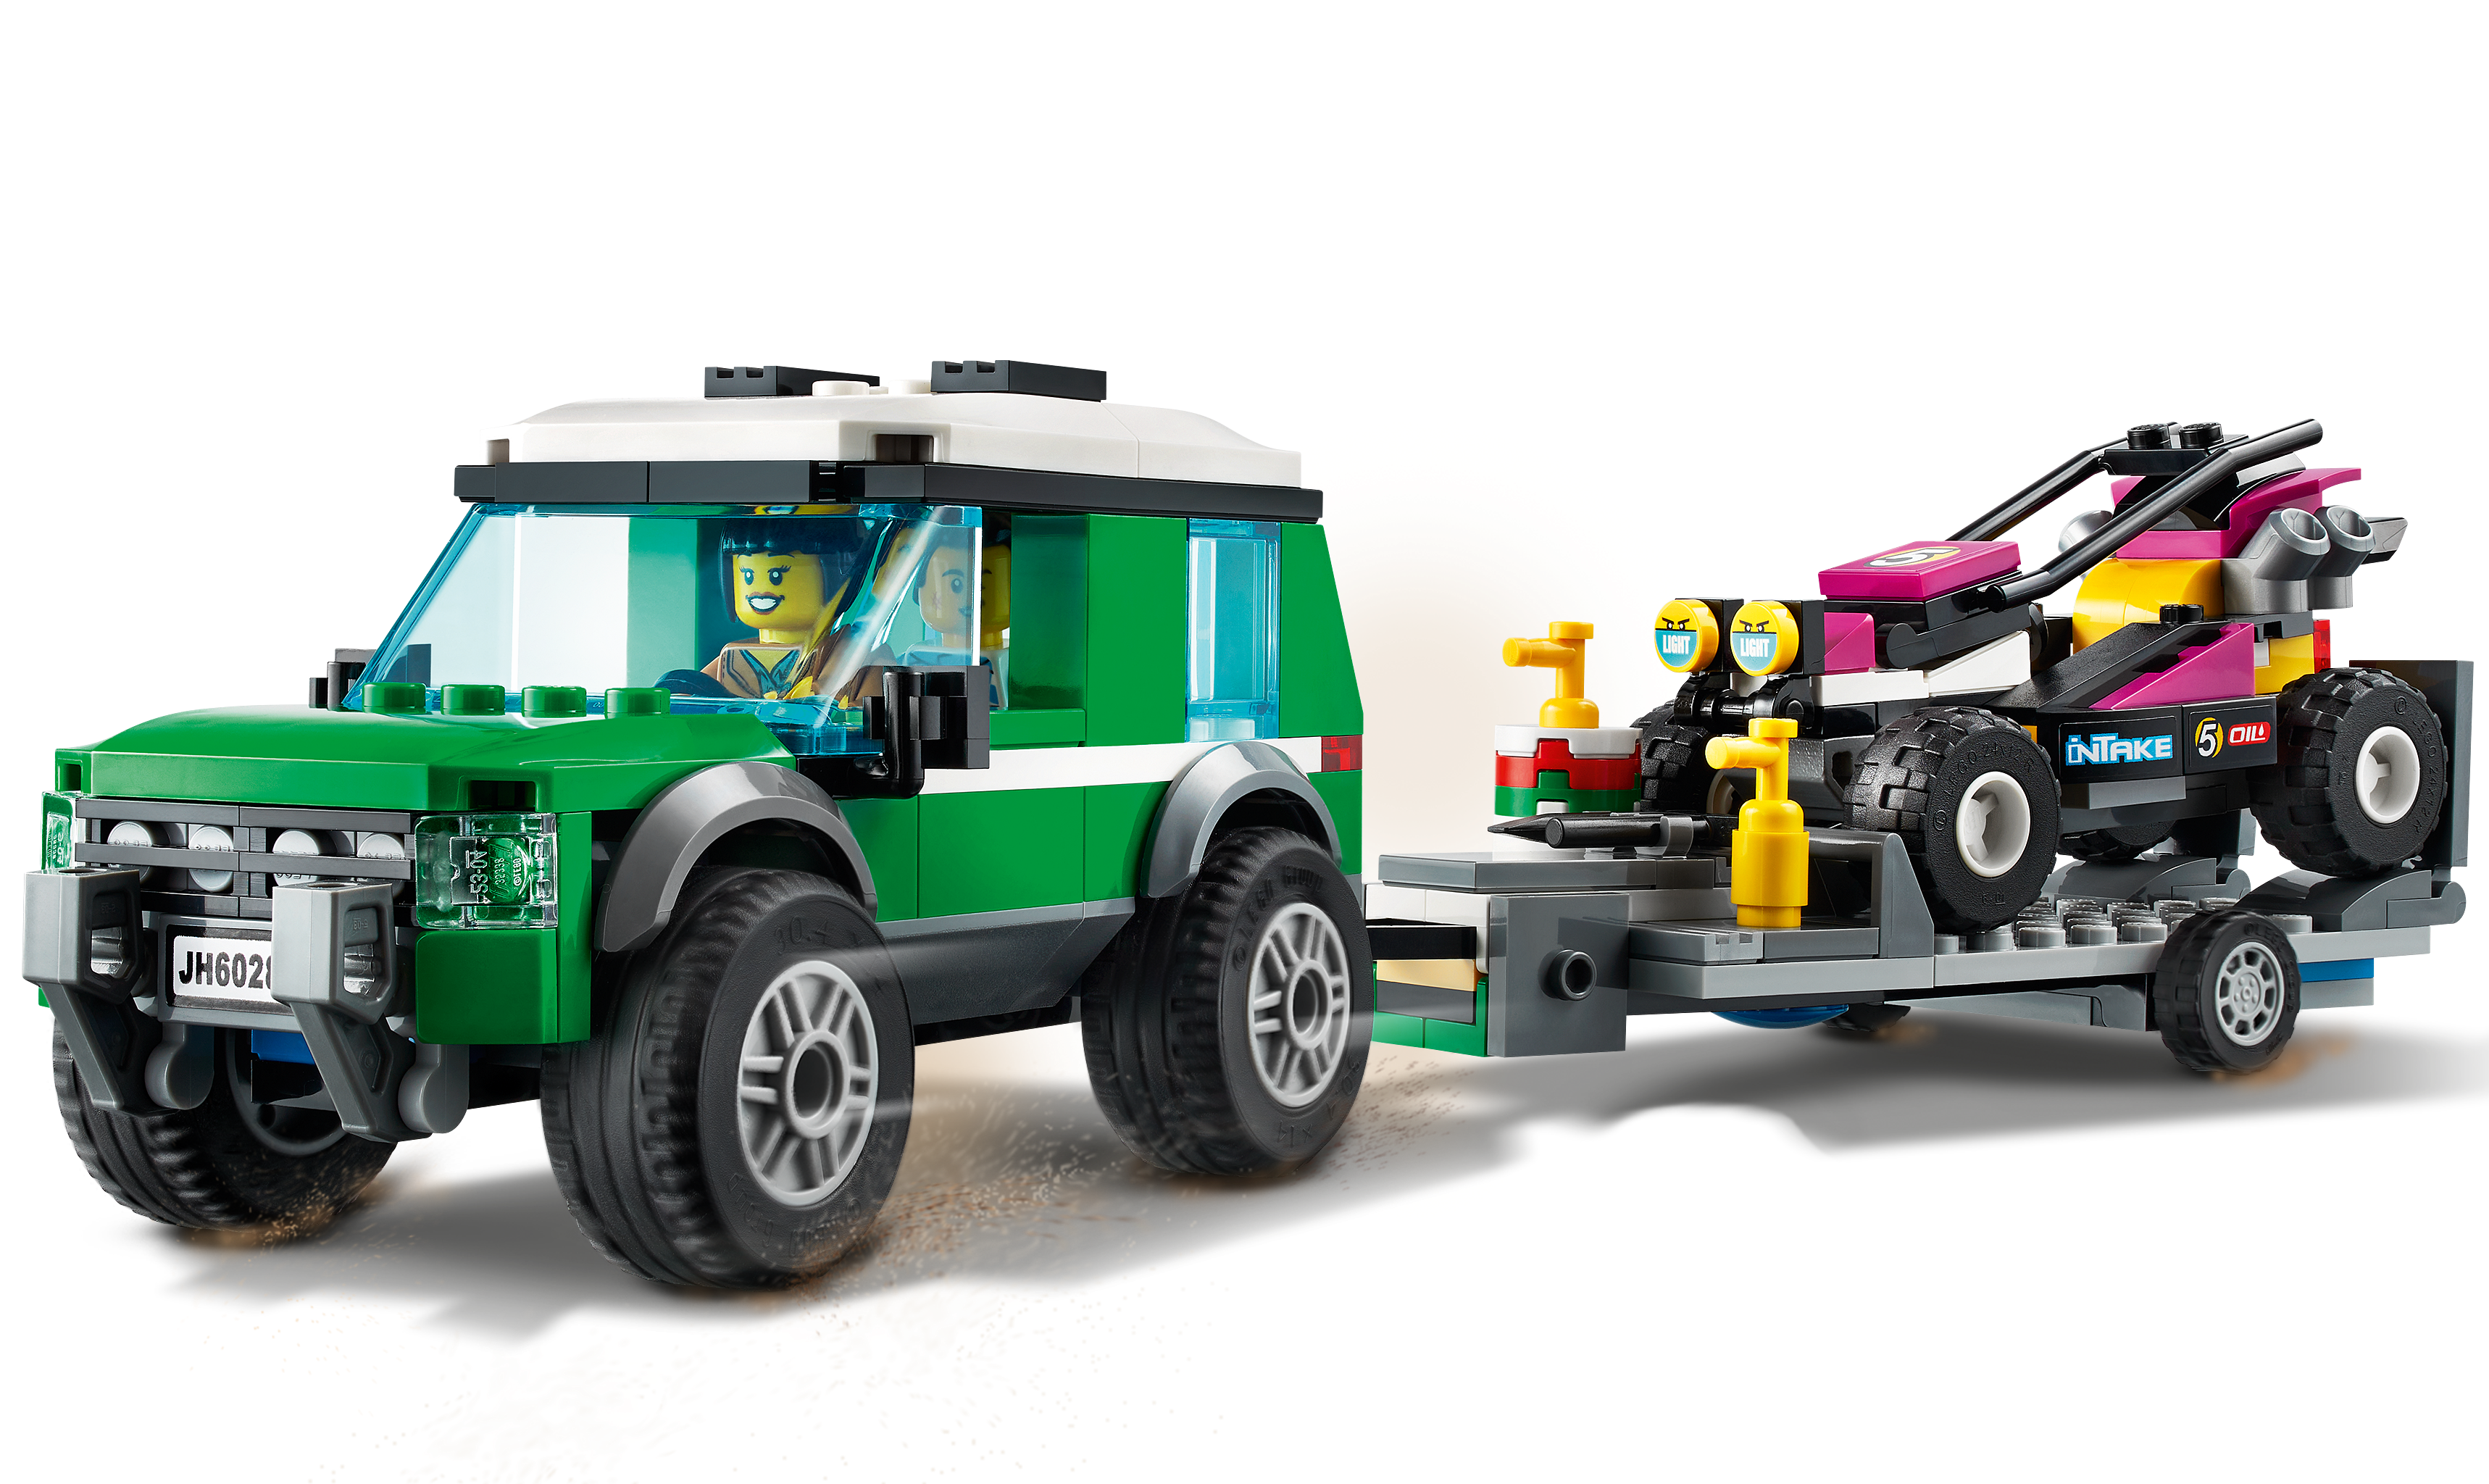 LEGO 60288 City Rennbuggy-Transporter Truck mit Anhänger und lenkbarem Baja-Rennwagen